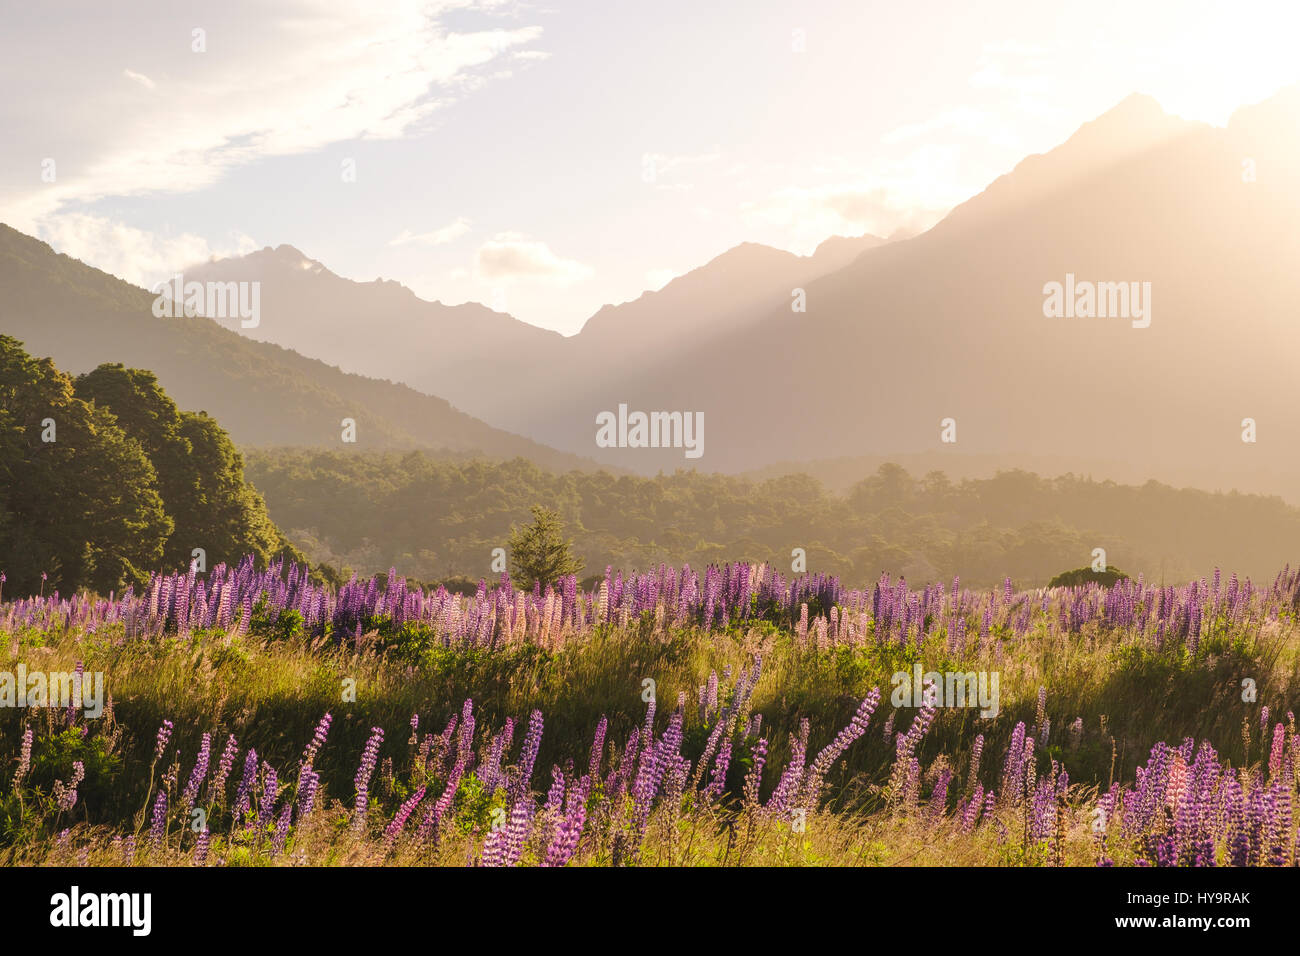 Landschaftsbild des Gebirges mit Lupinen Blumen bei Sonnenuntergang, Fjordland, Neuseeland Stockfoto